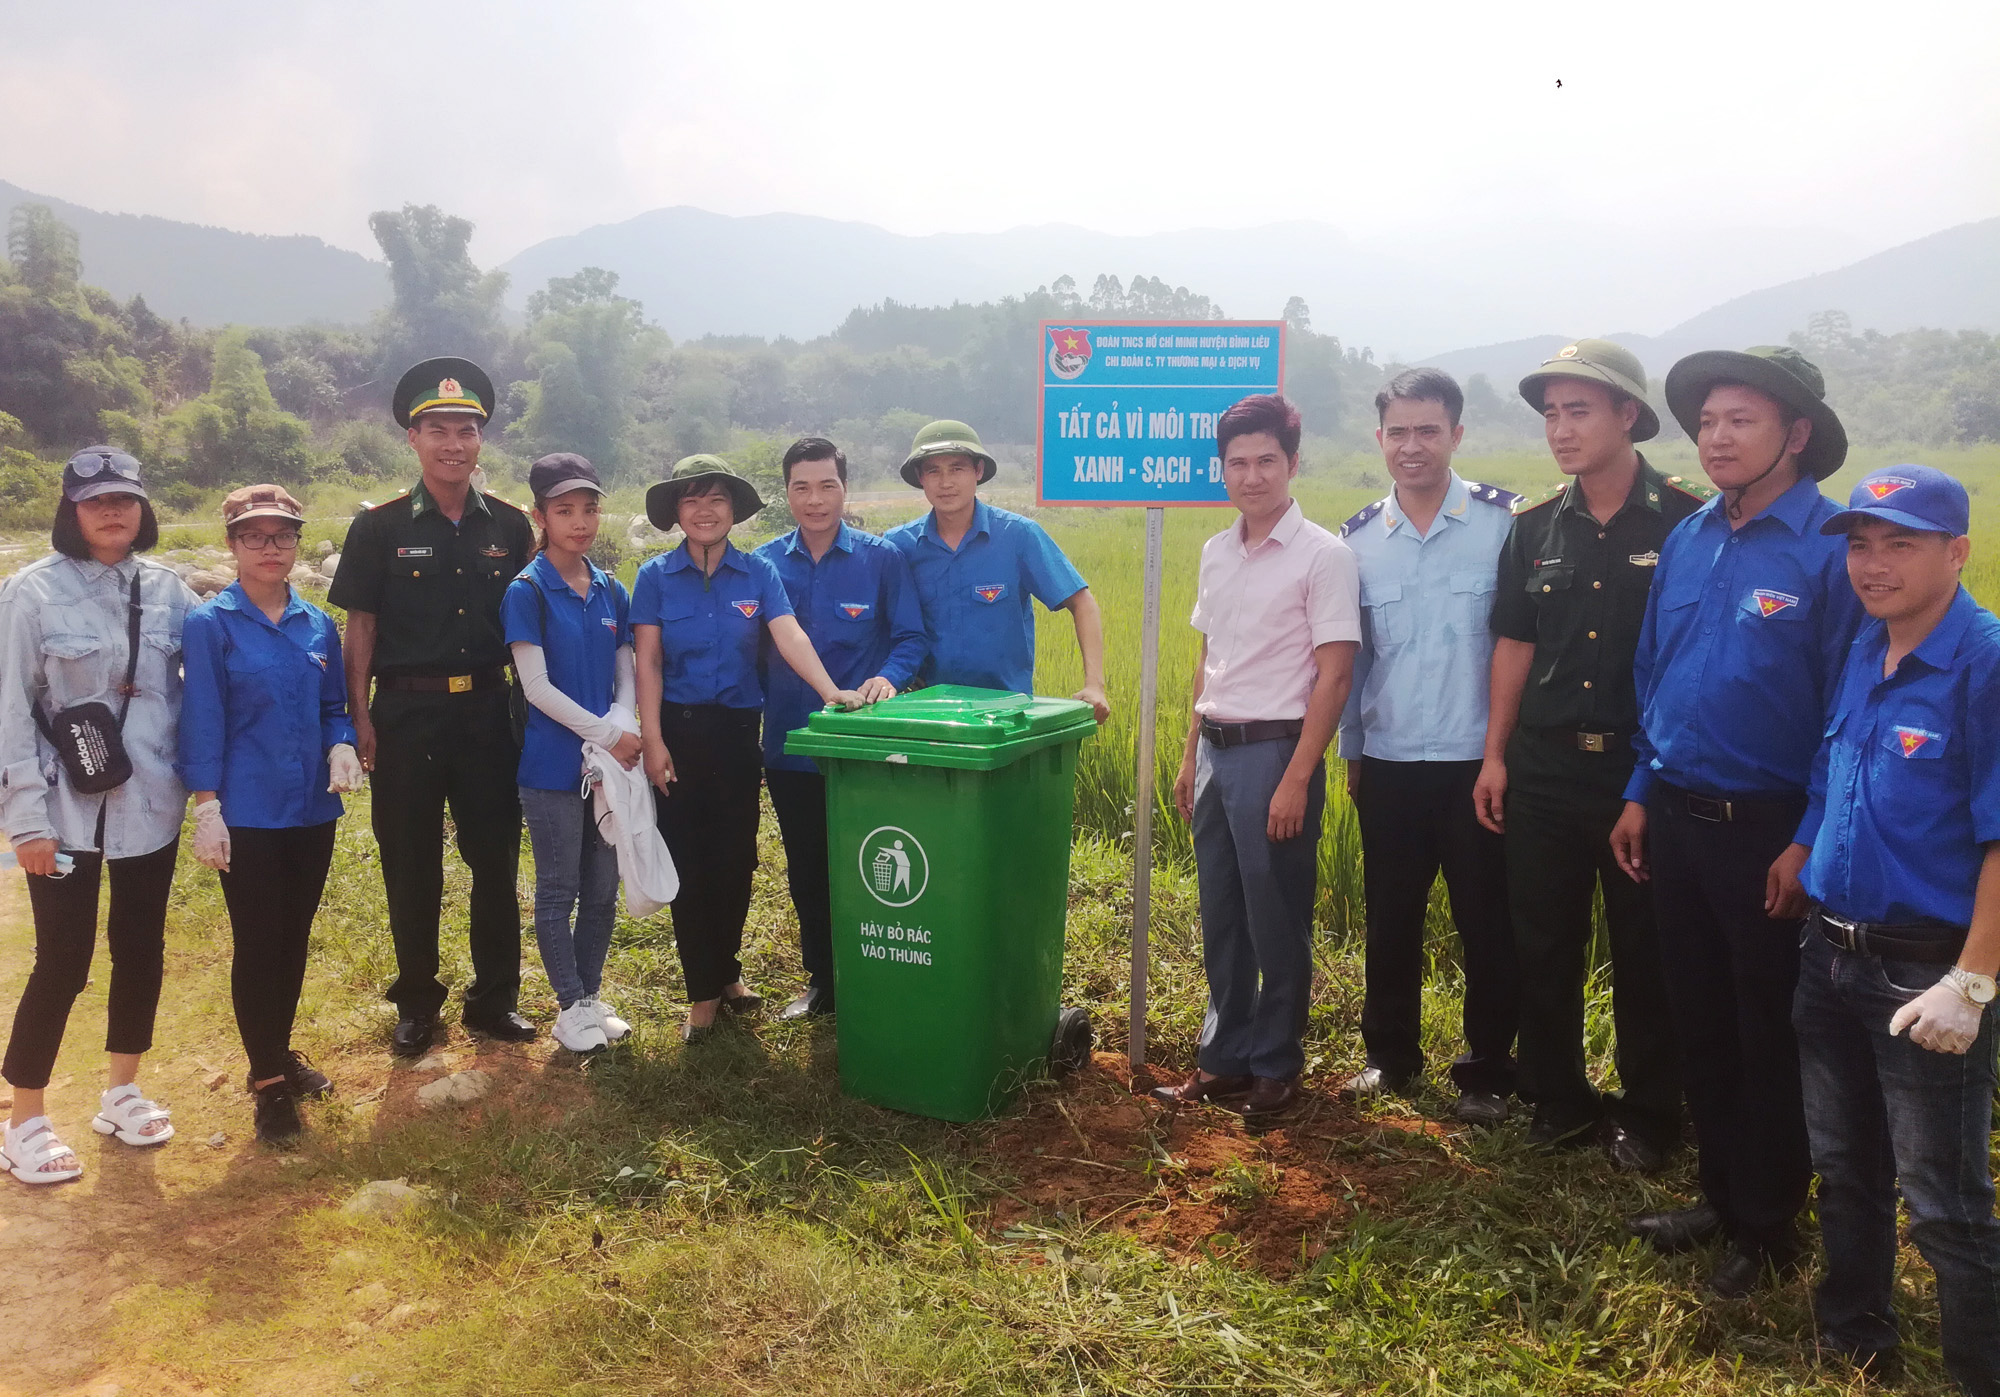 ĐVTN lắp đặt thùng rác và biển báo vệ sinh môi trường tại khu vực cột mốc biên giới 1320.